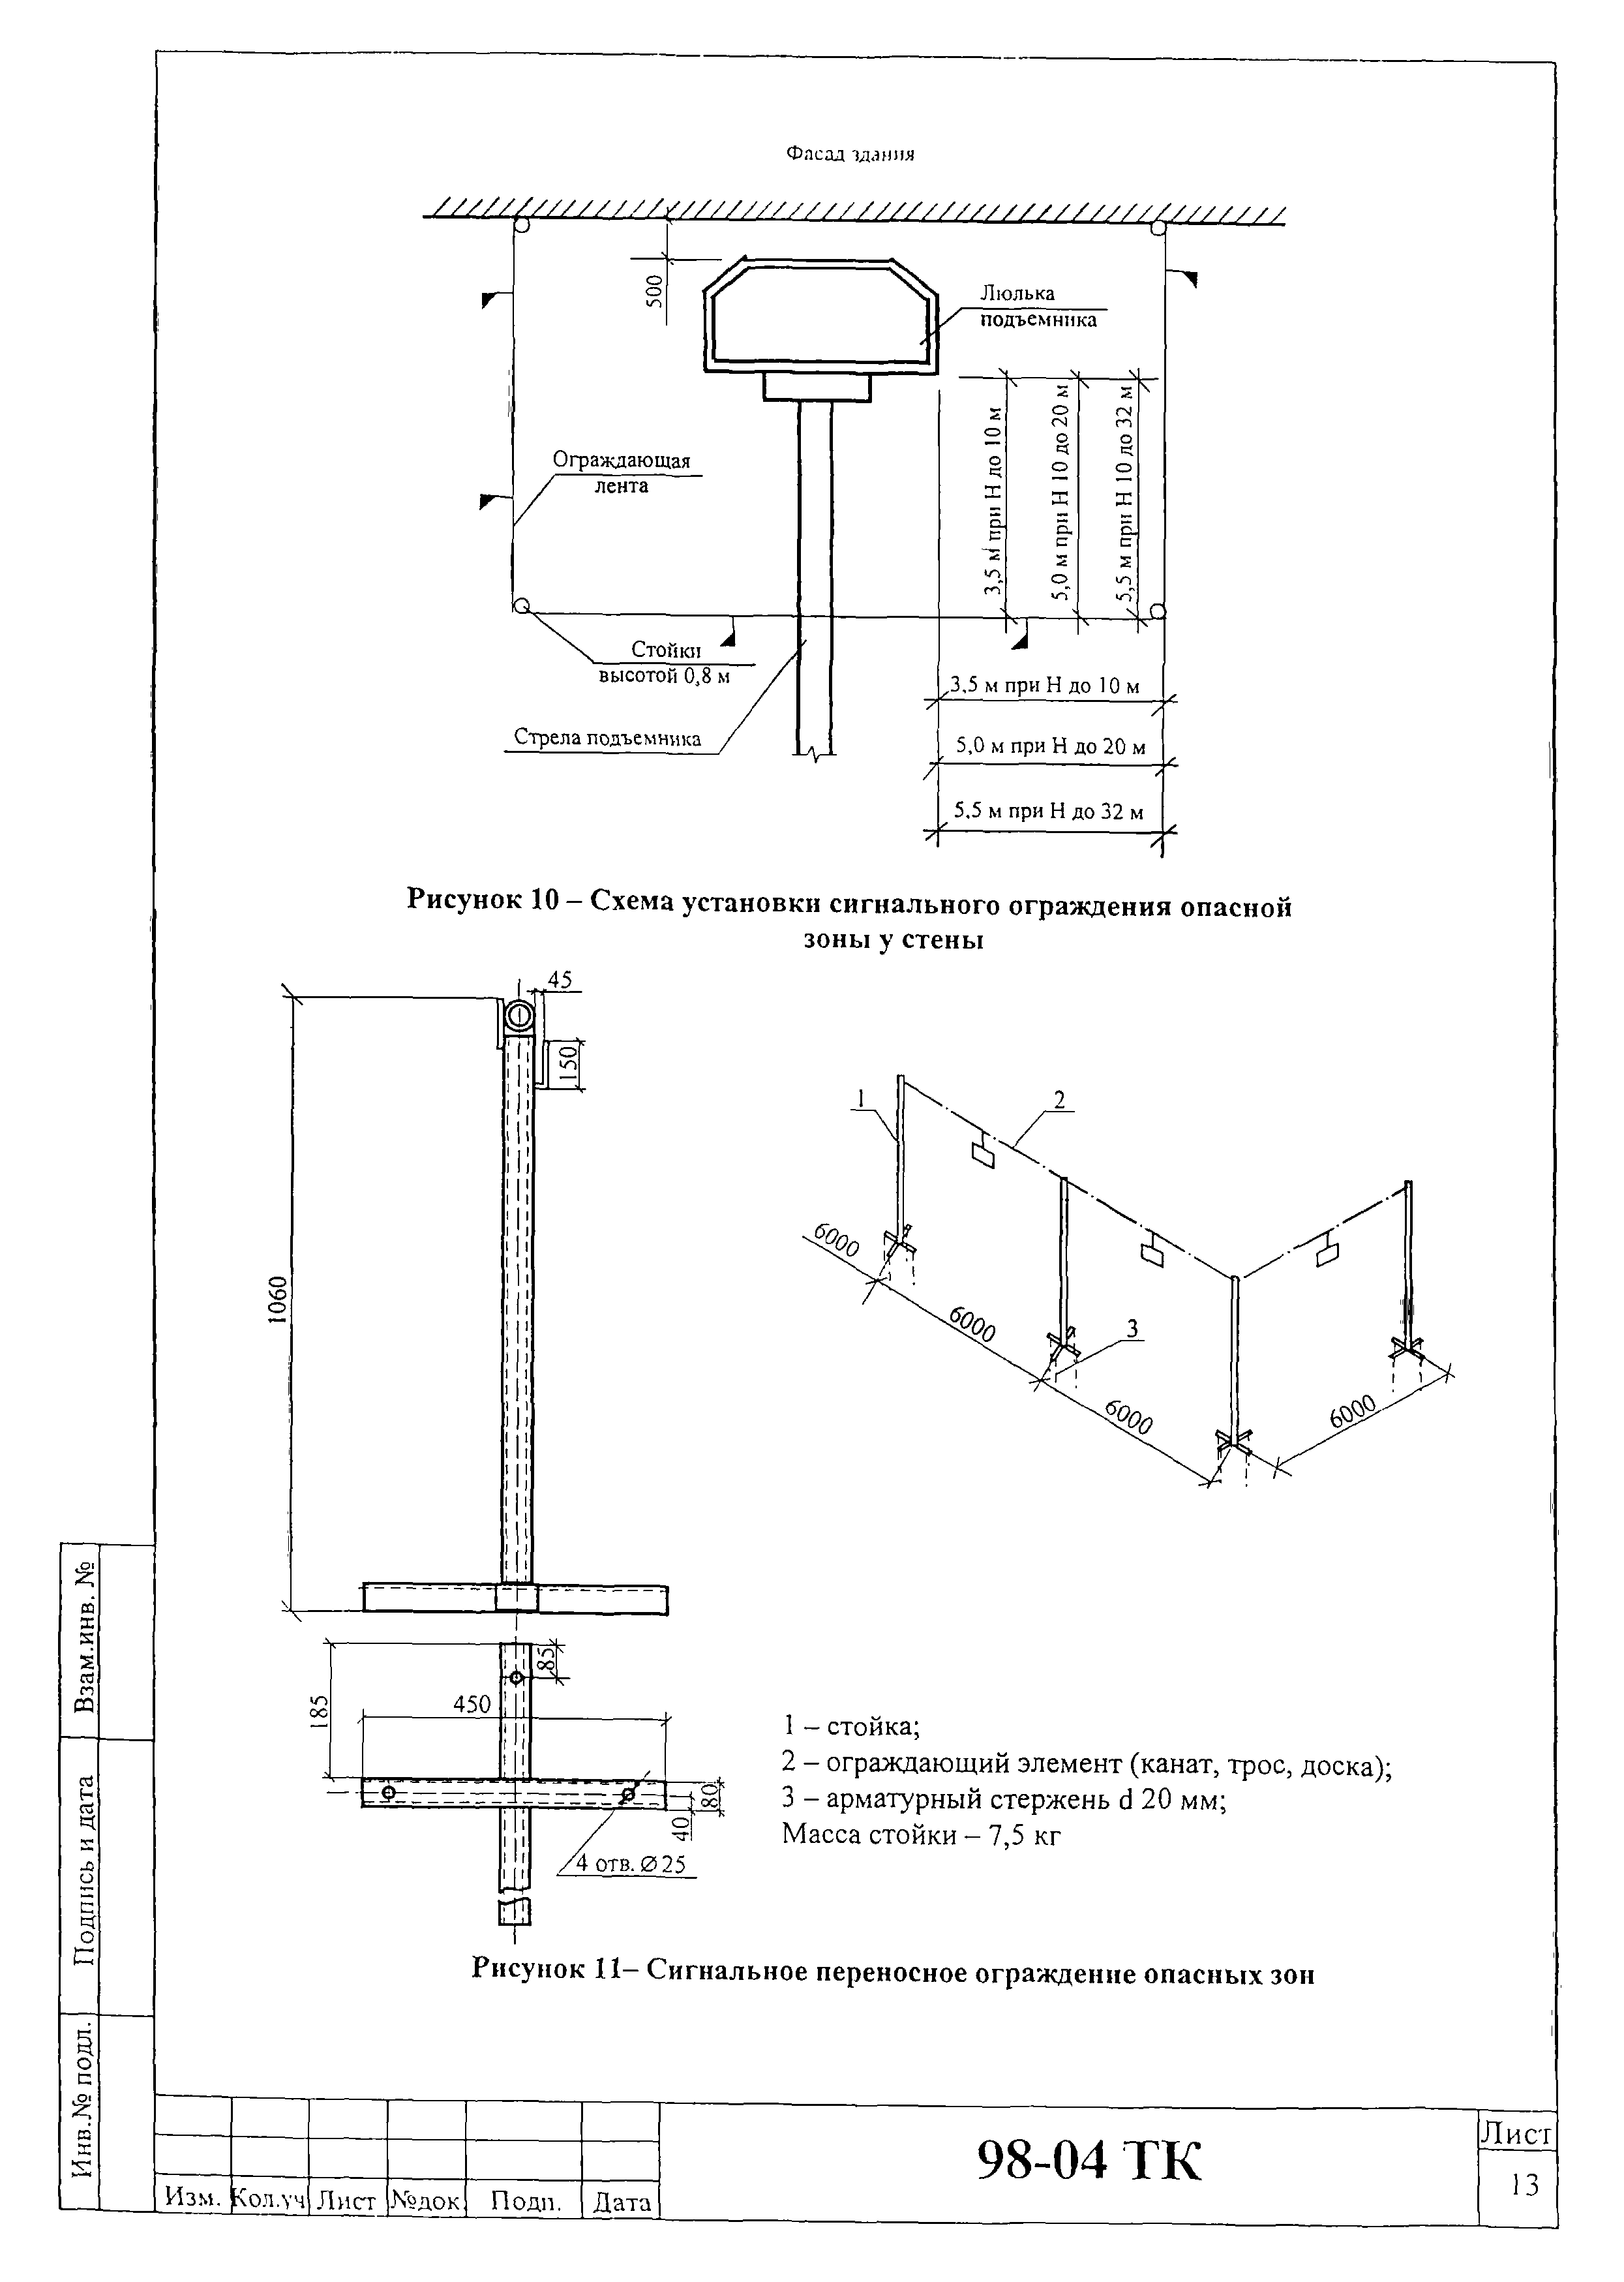 Технологическая карта 98-04 ТК